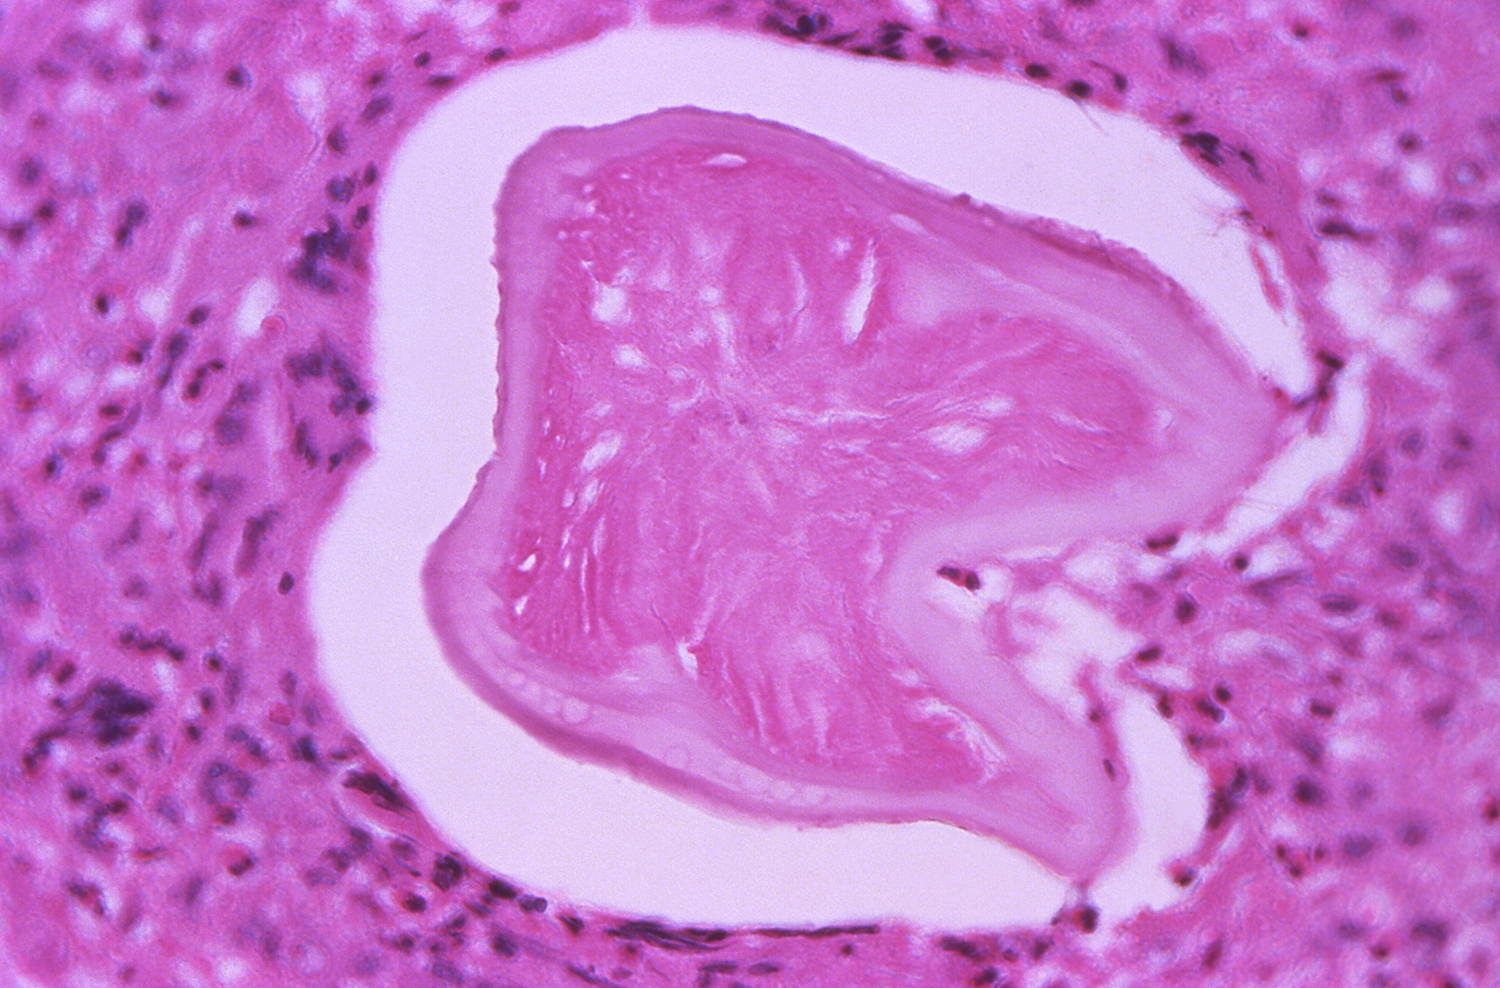 tissue-specimen-showing-roundworm.jpg